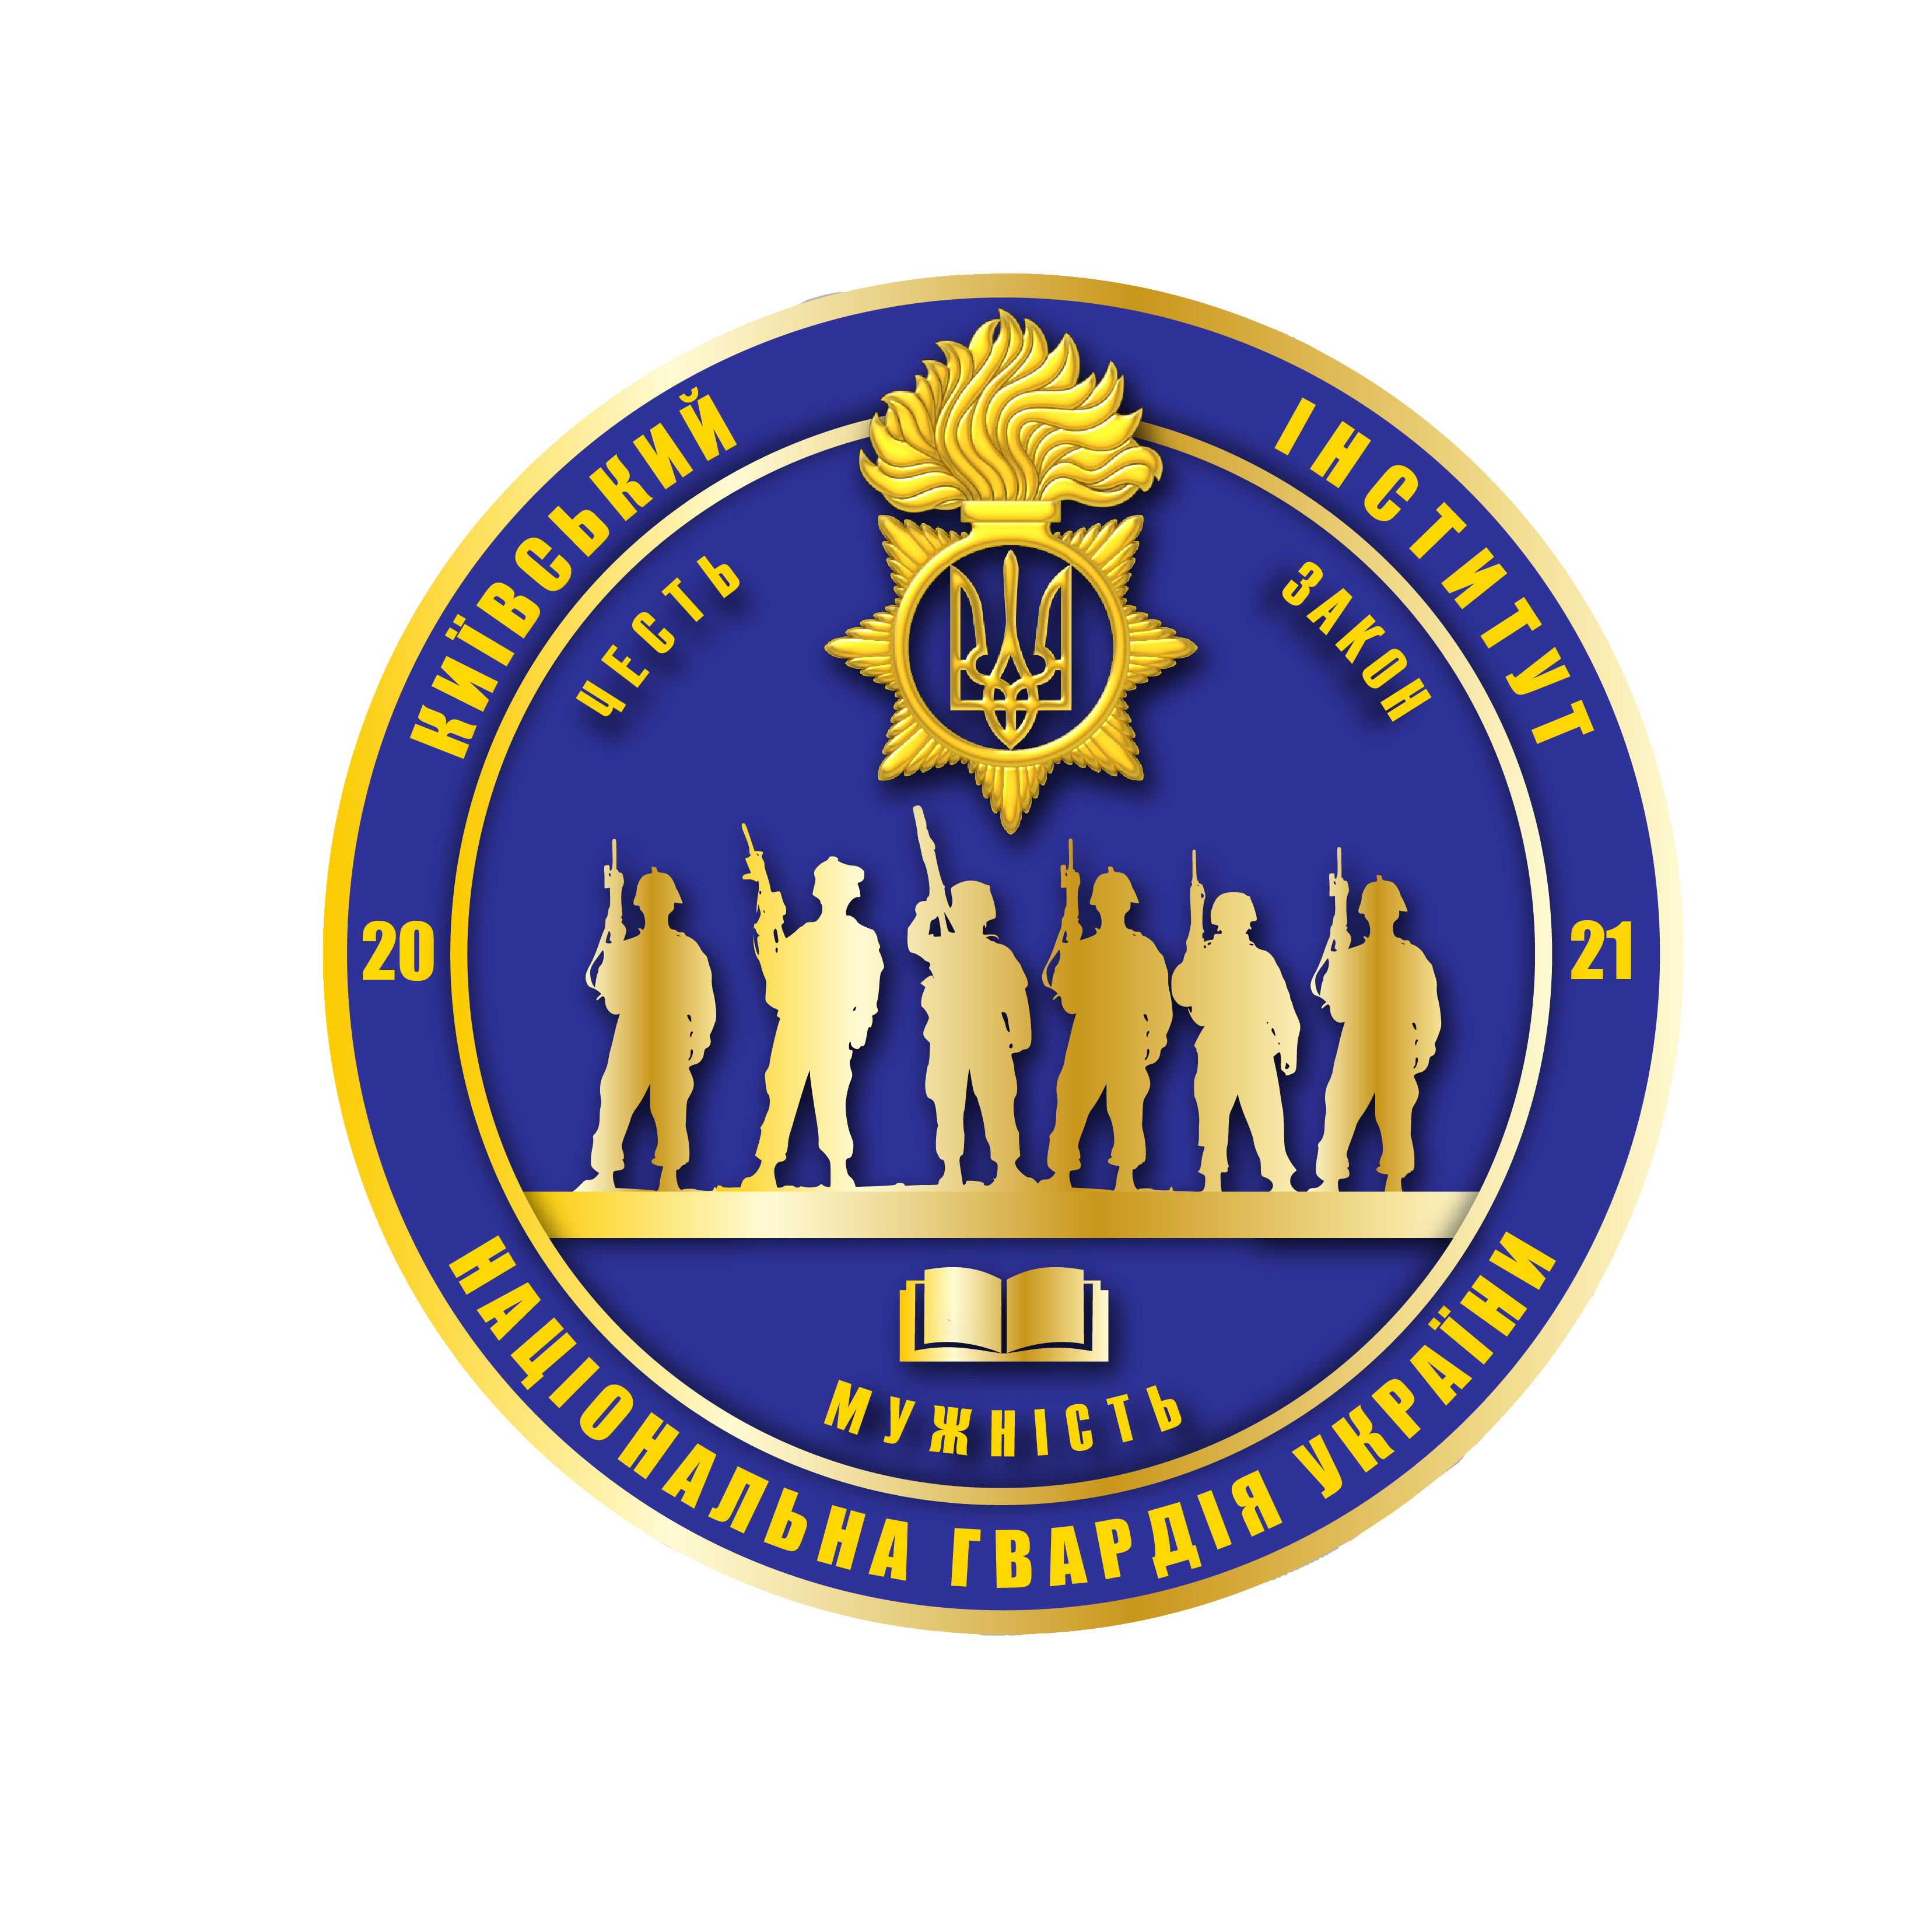 Київський інститут НГУ активно займається проведенням профорієнтаційних заходів у школах та ліцеях як у місті Києві, так і на території Київської області